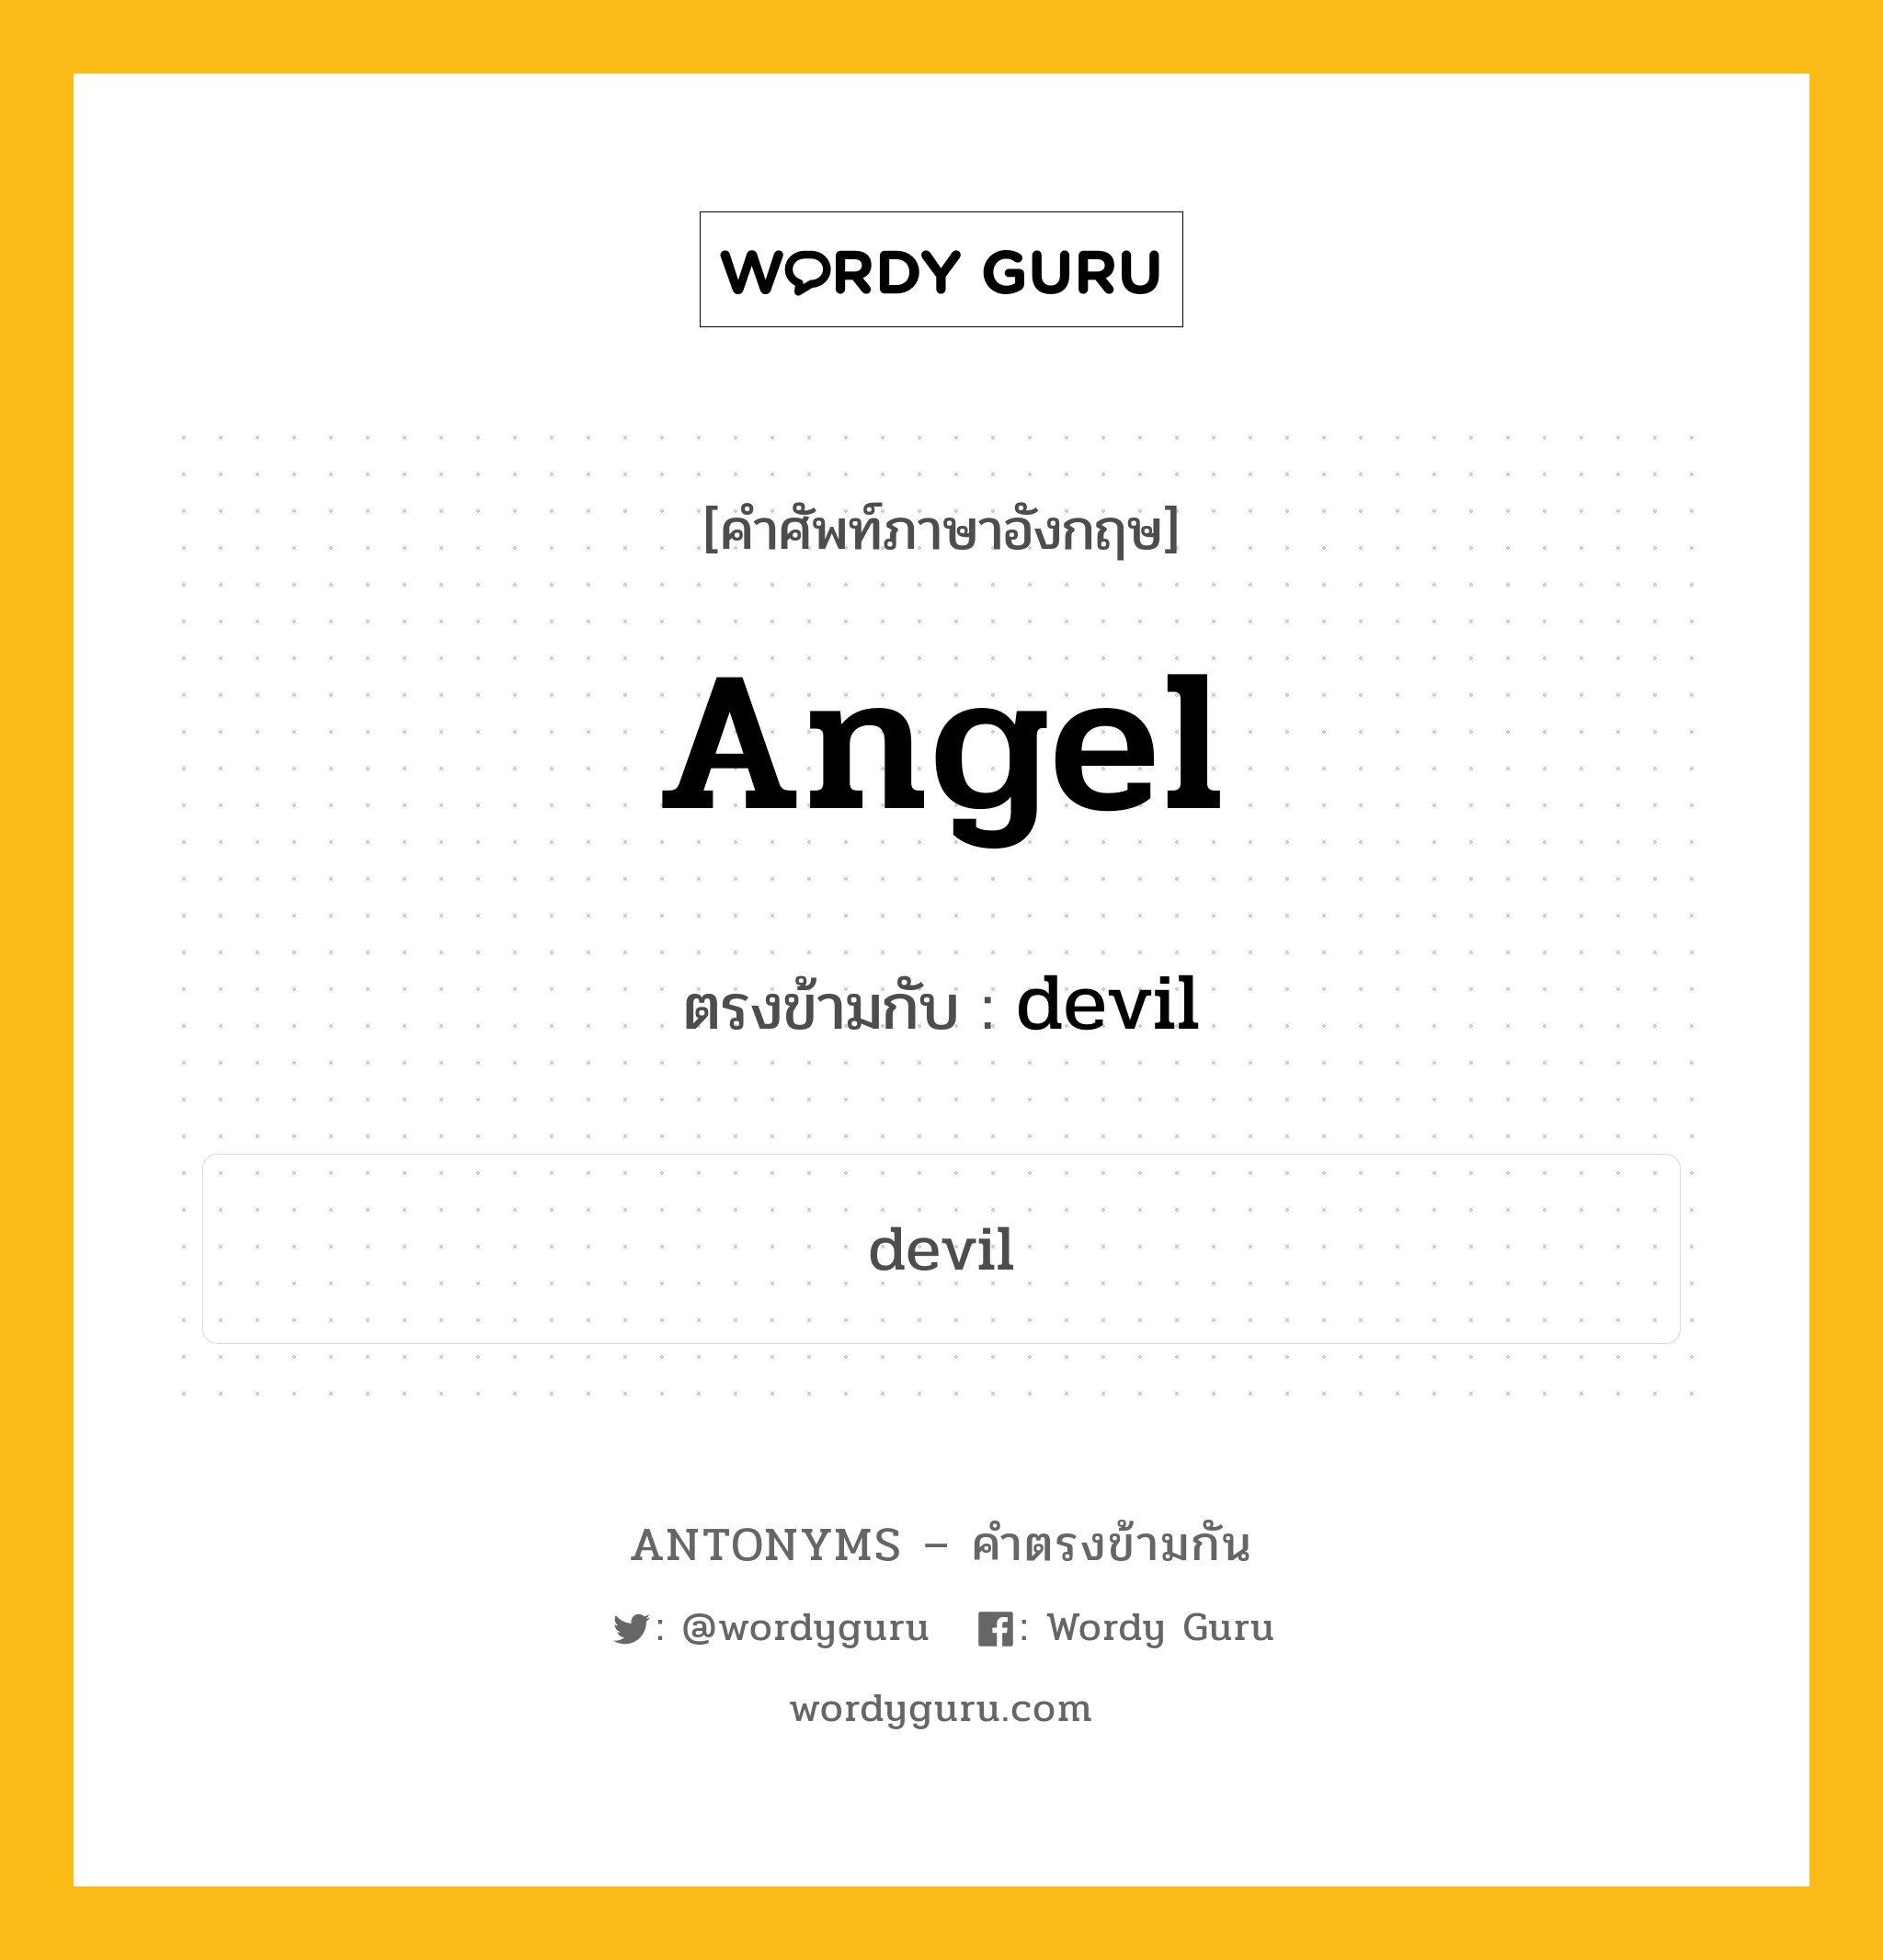 angel เป็นคำตรงข้ามกับคำไหนบ้าง?, คำศัพท์ภาษาอังกฤษ angel ตรงข้ามกับ devil หมวด devil